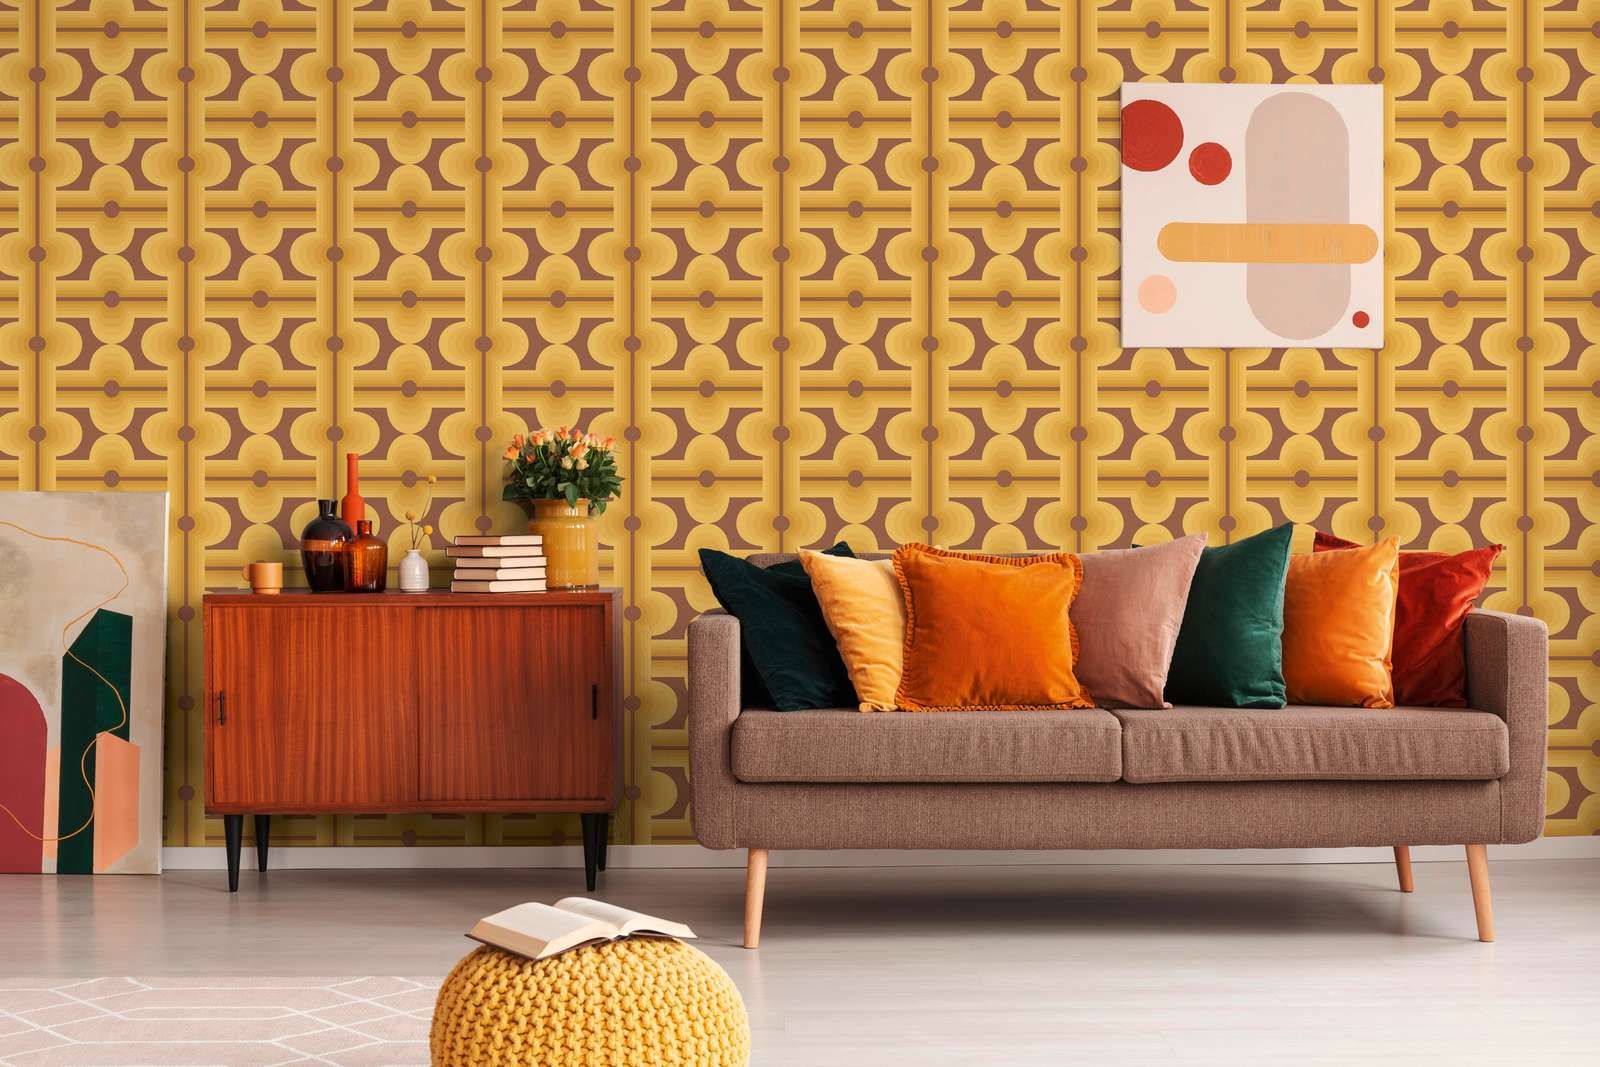             Motifs abstraits sur papier peint intissé des années 70 dans des couleurs chaudes - marron, jaune, orange
        